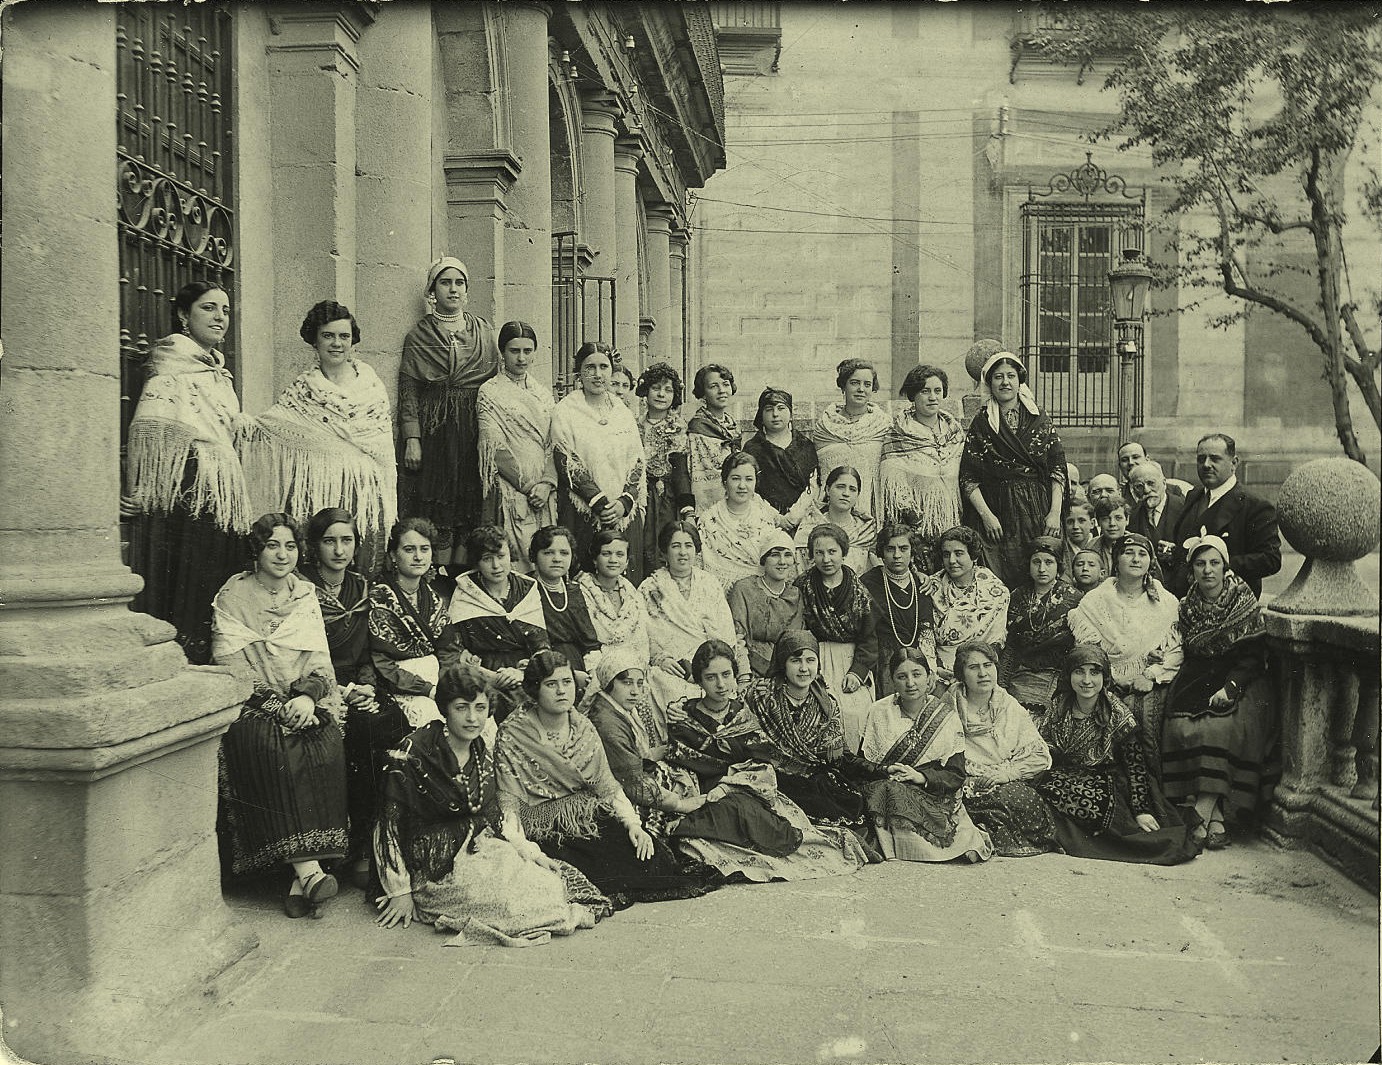 b.-Grupo de mujeres en la fachada del Ayuntamiento de Toledo